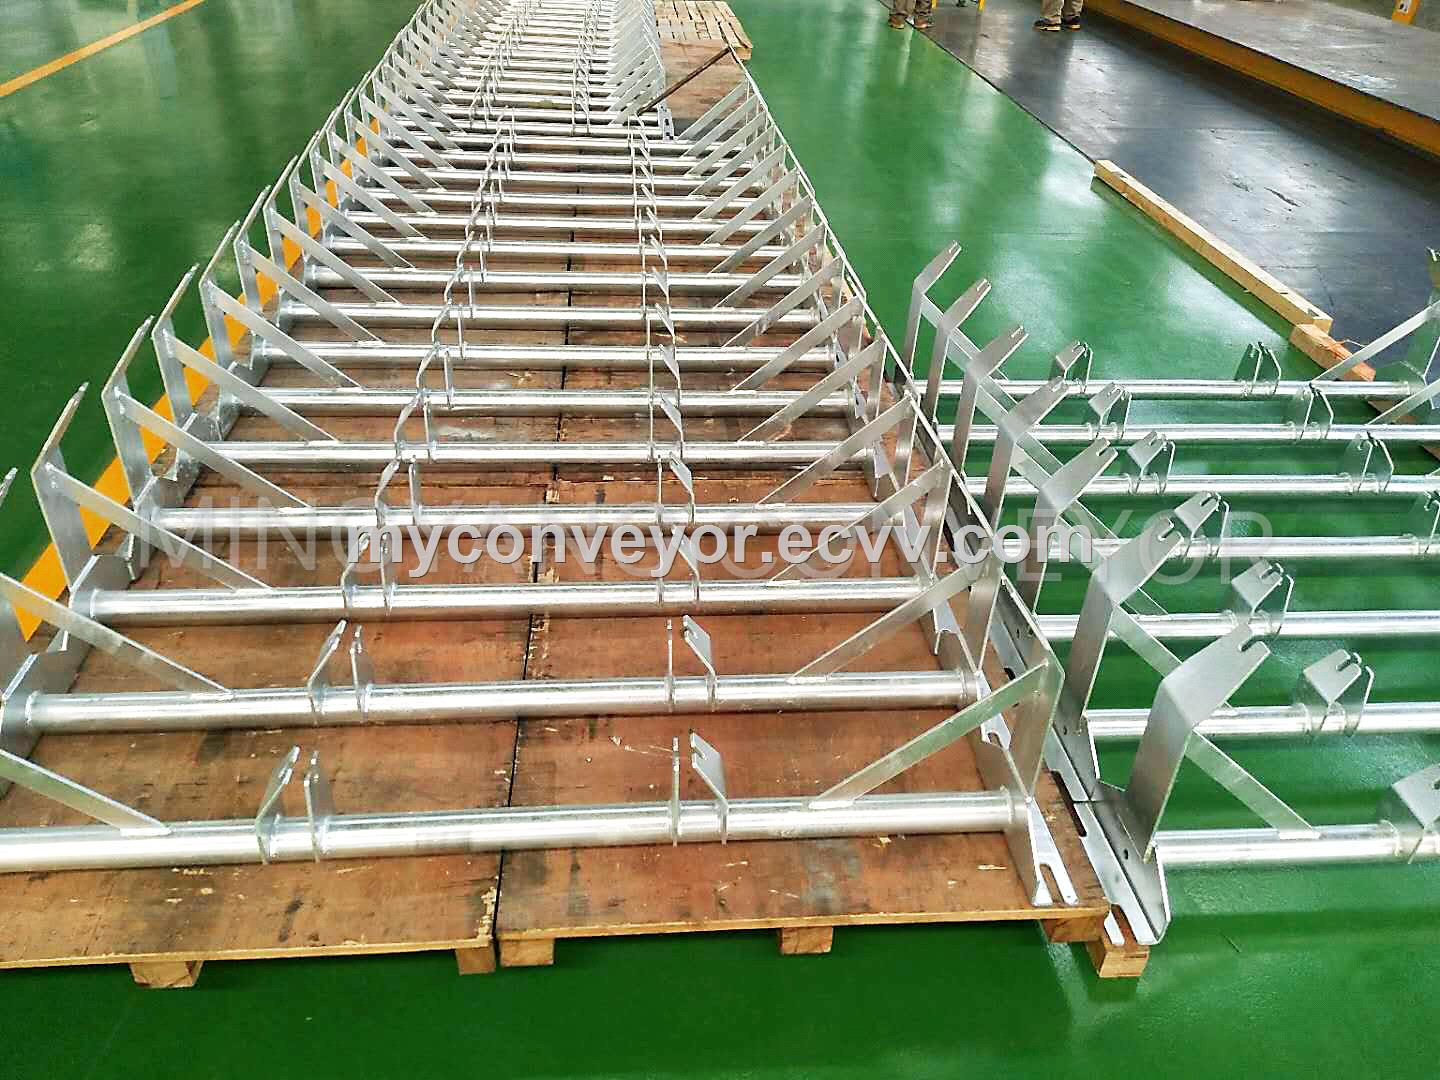 MYC Conveyor Frame Galvanized Frame Conveyor Bracket